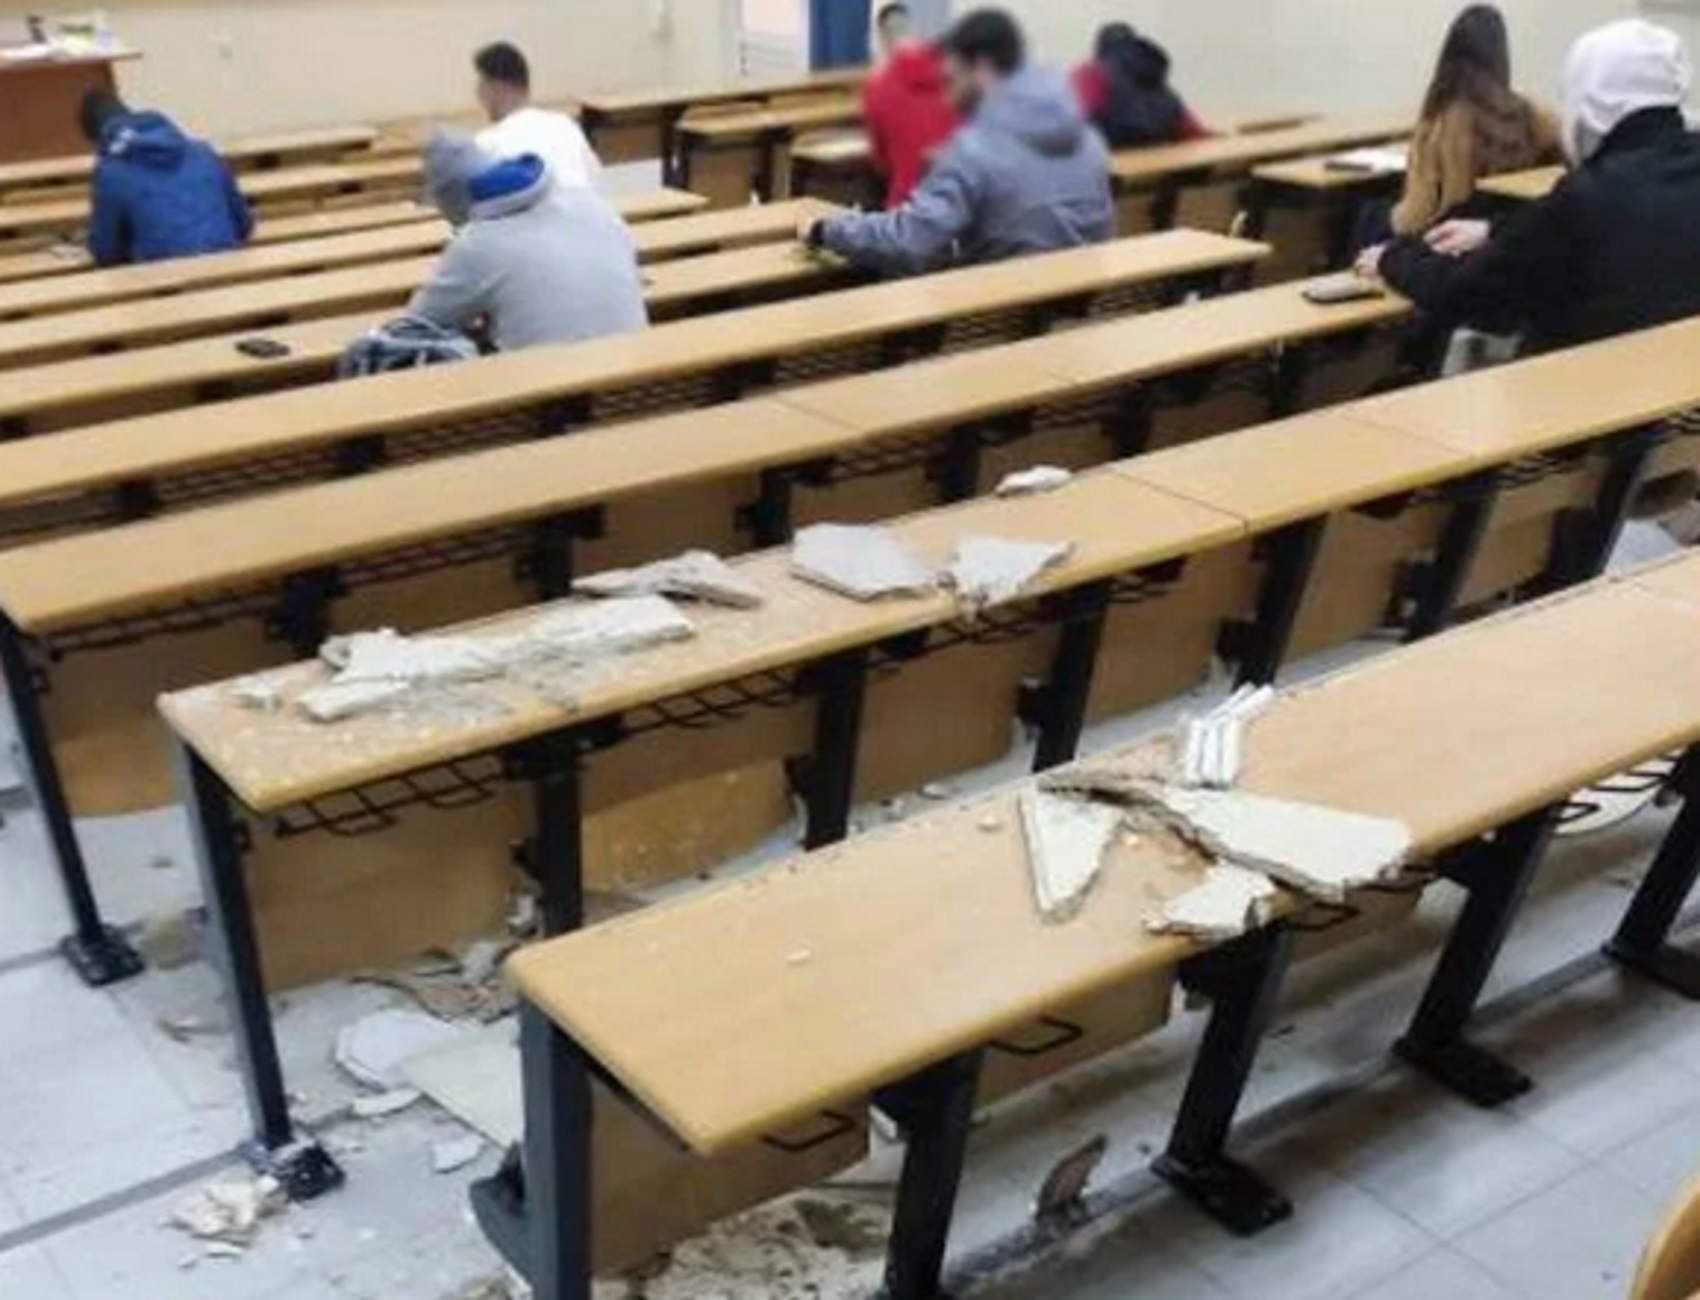 Πανεπιστήμιο Πατρών: Κατέρρευσε τμήμα της οροφής, συνεχείς επιθέσεις από αδέσποτα σκυλιά